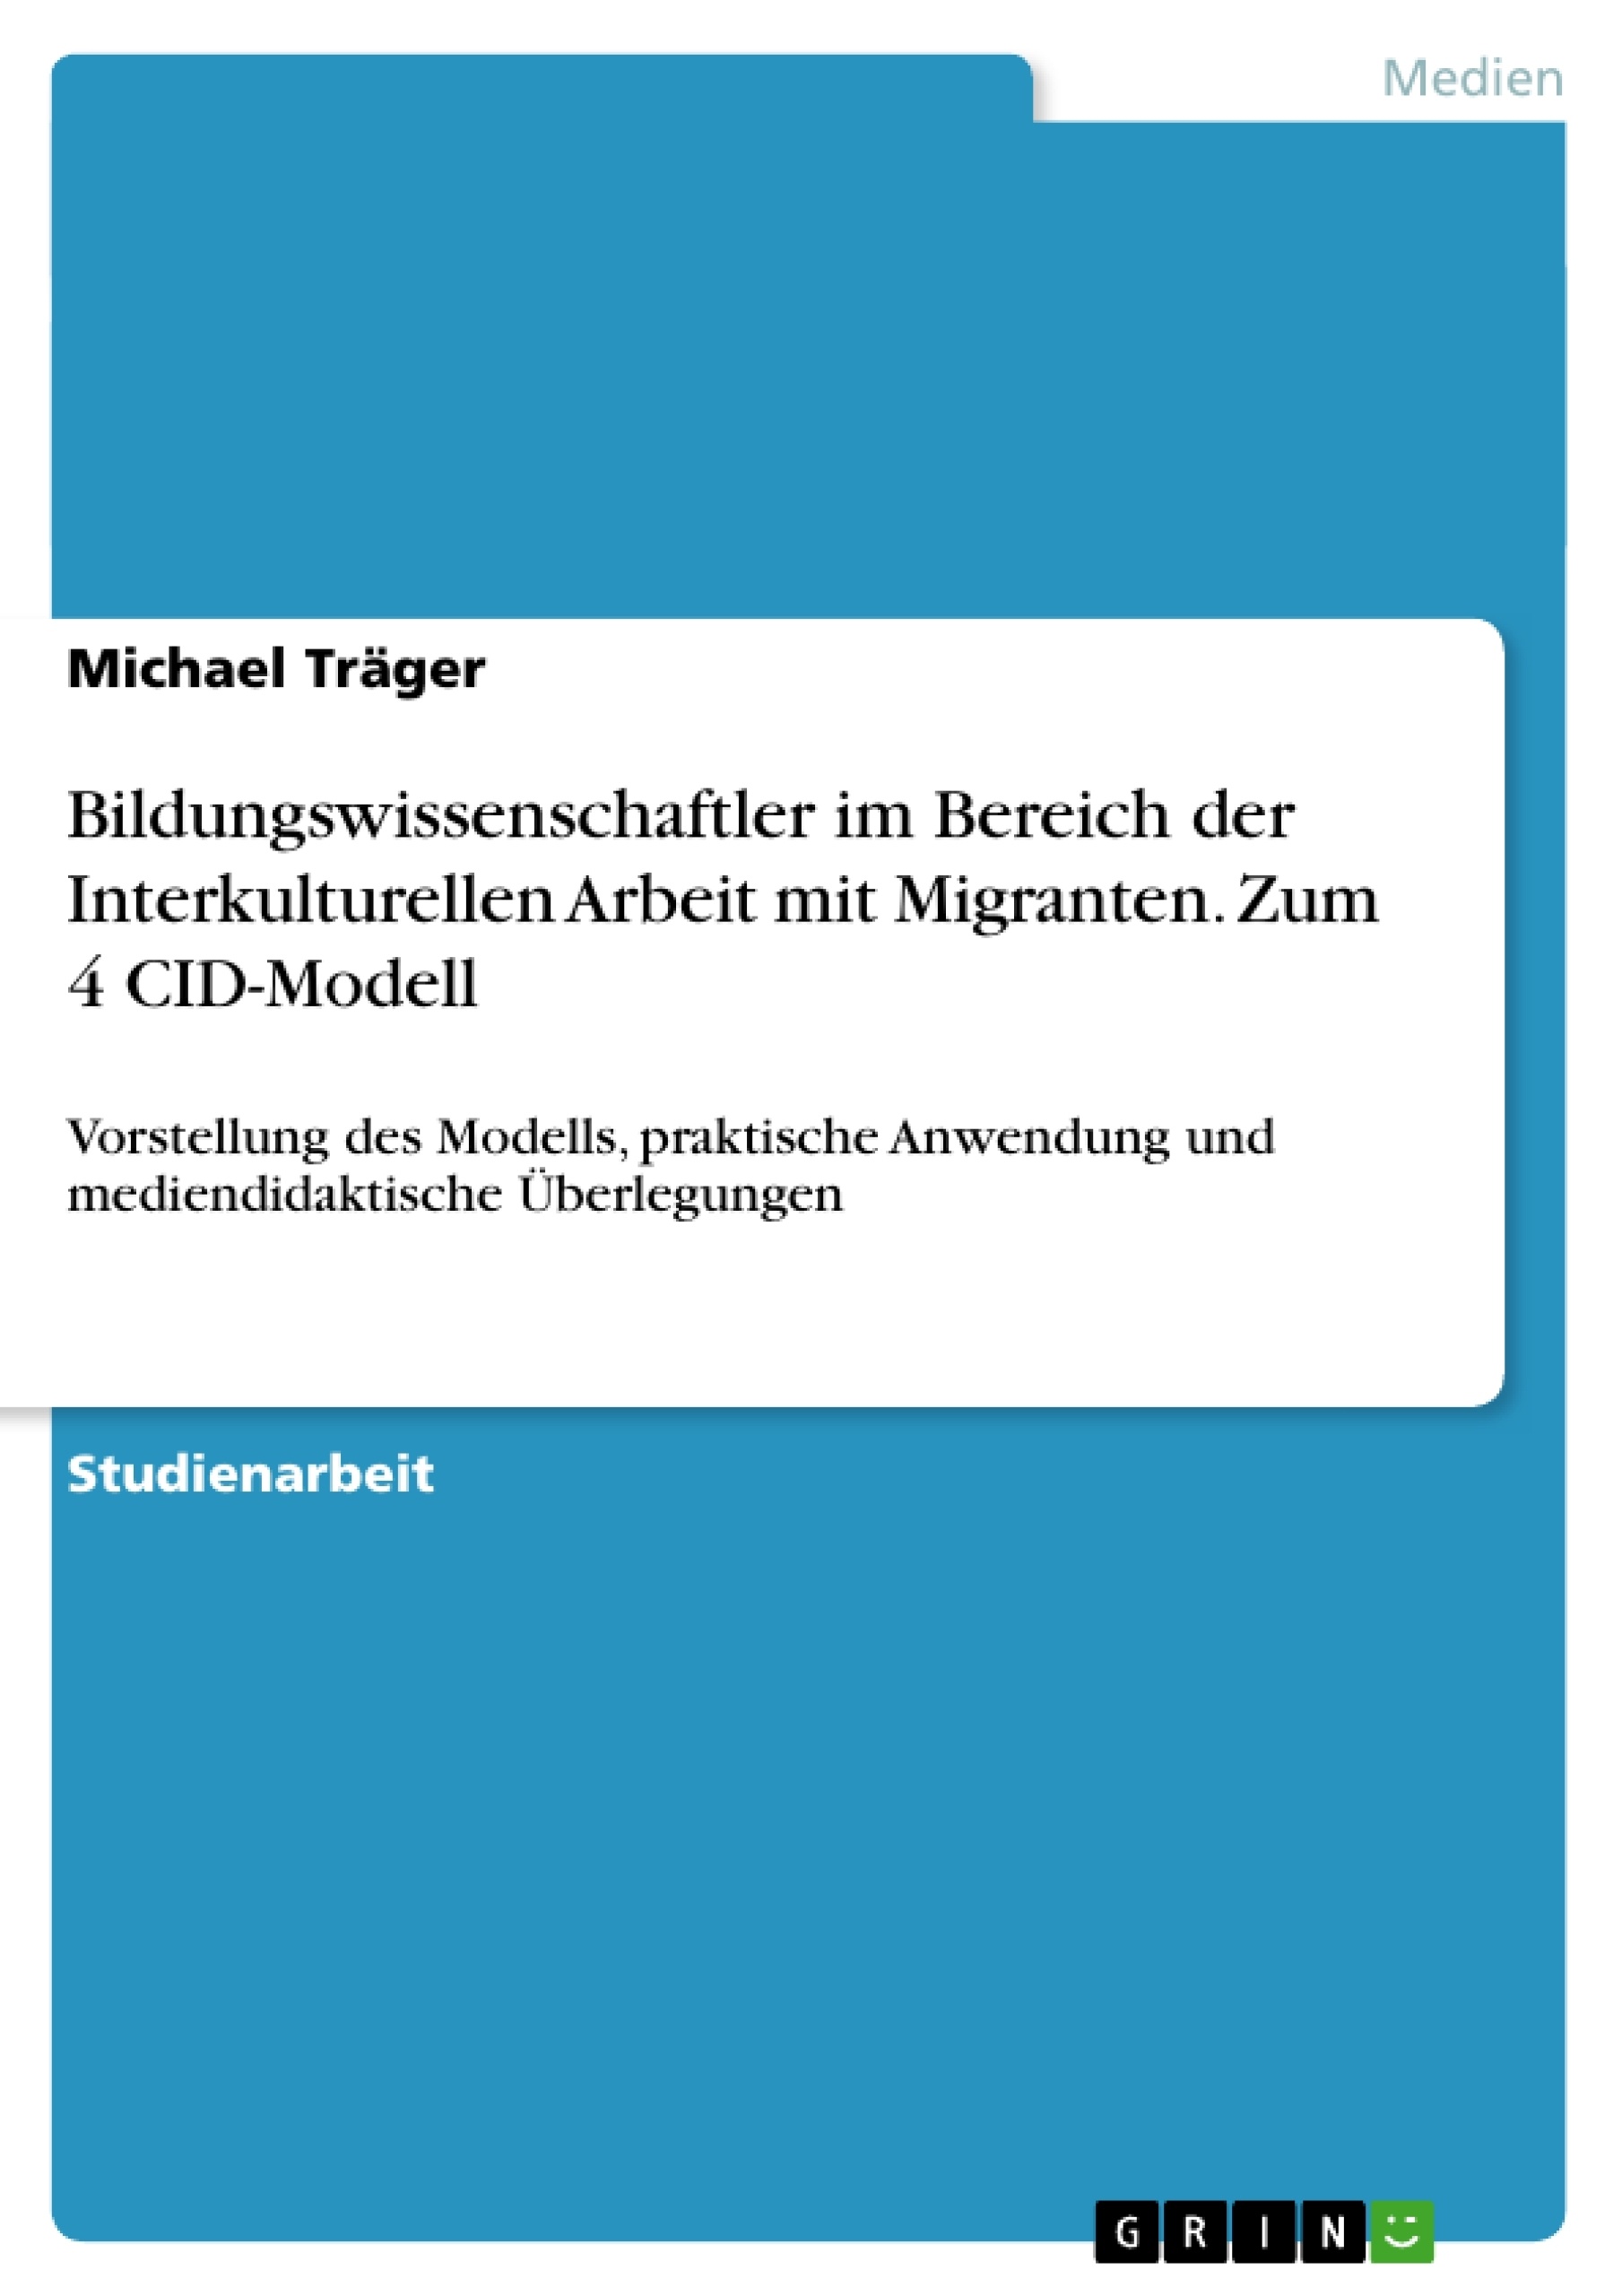 Título: Bildungswissenschaftler im Bereich der Interkulturellen Arbeit mit Migranten. Zum 4 CID-Modell